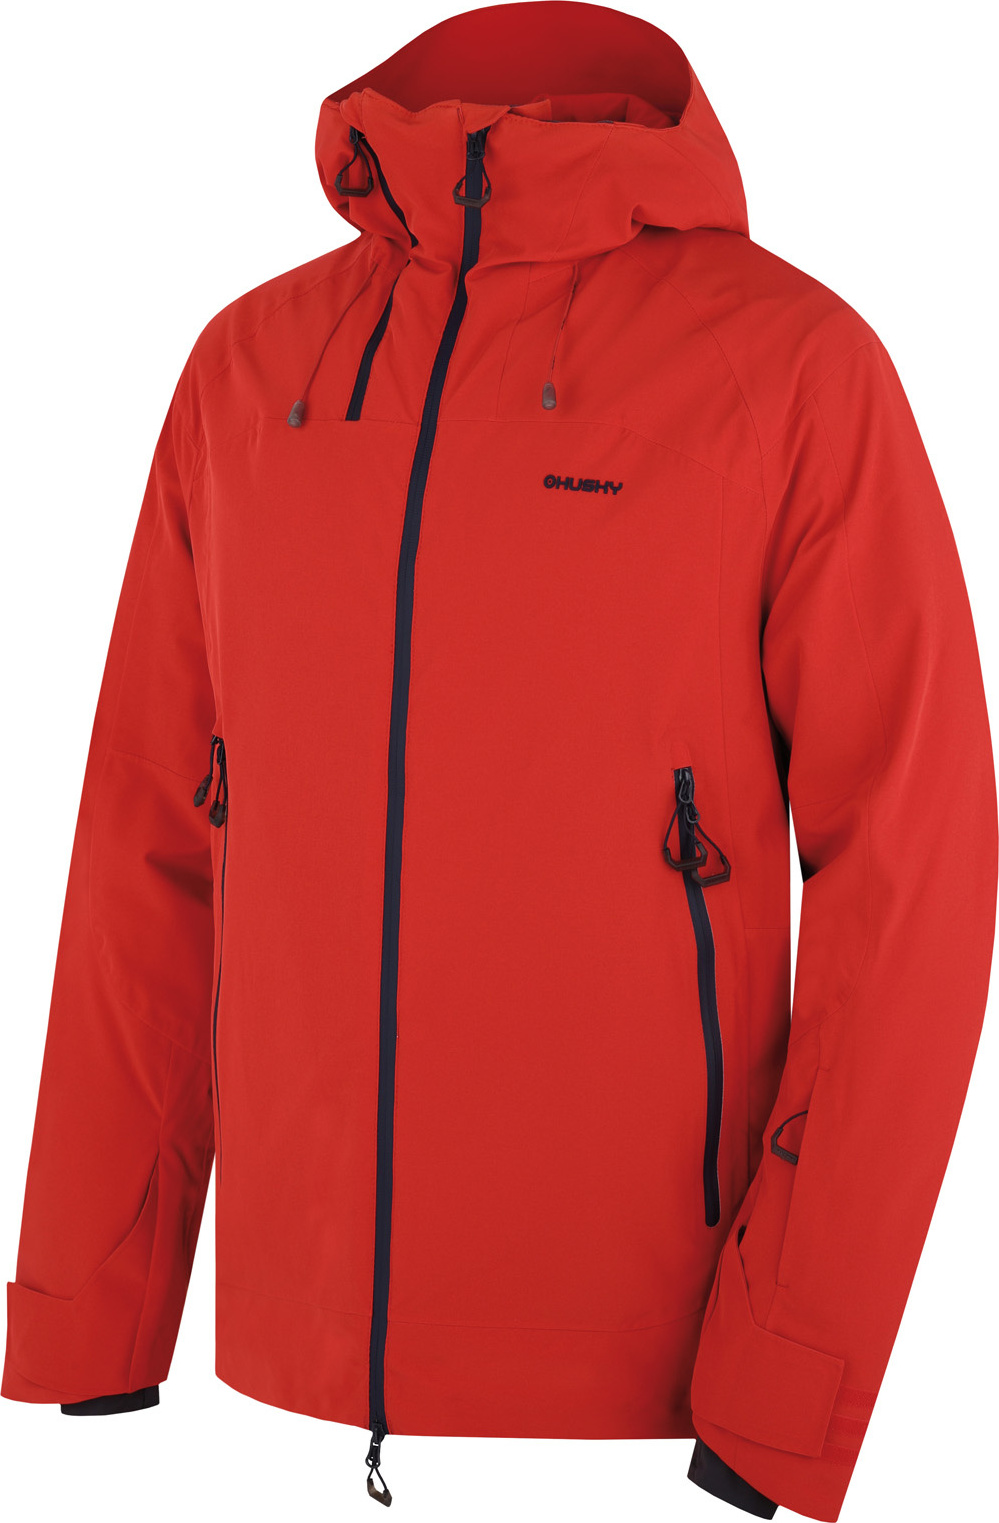 Pánská lyžařská bunda HUSKY Gambola červená Velikost: L